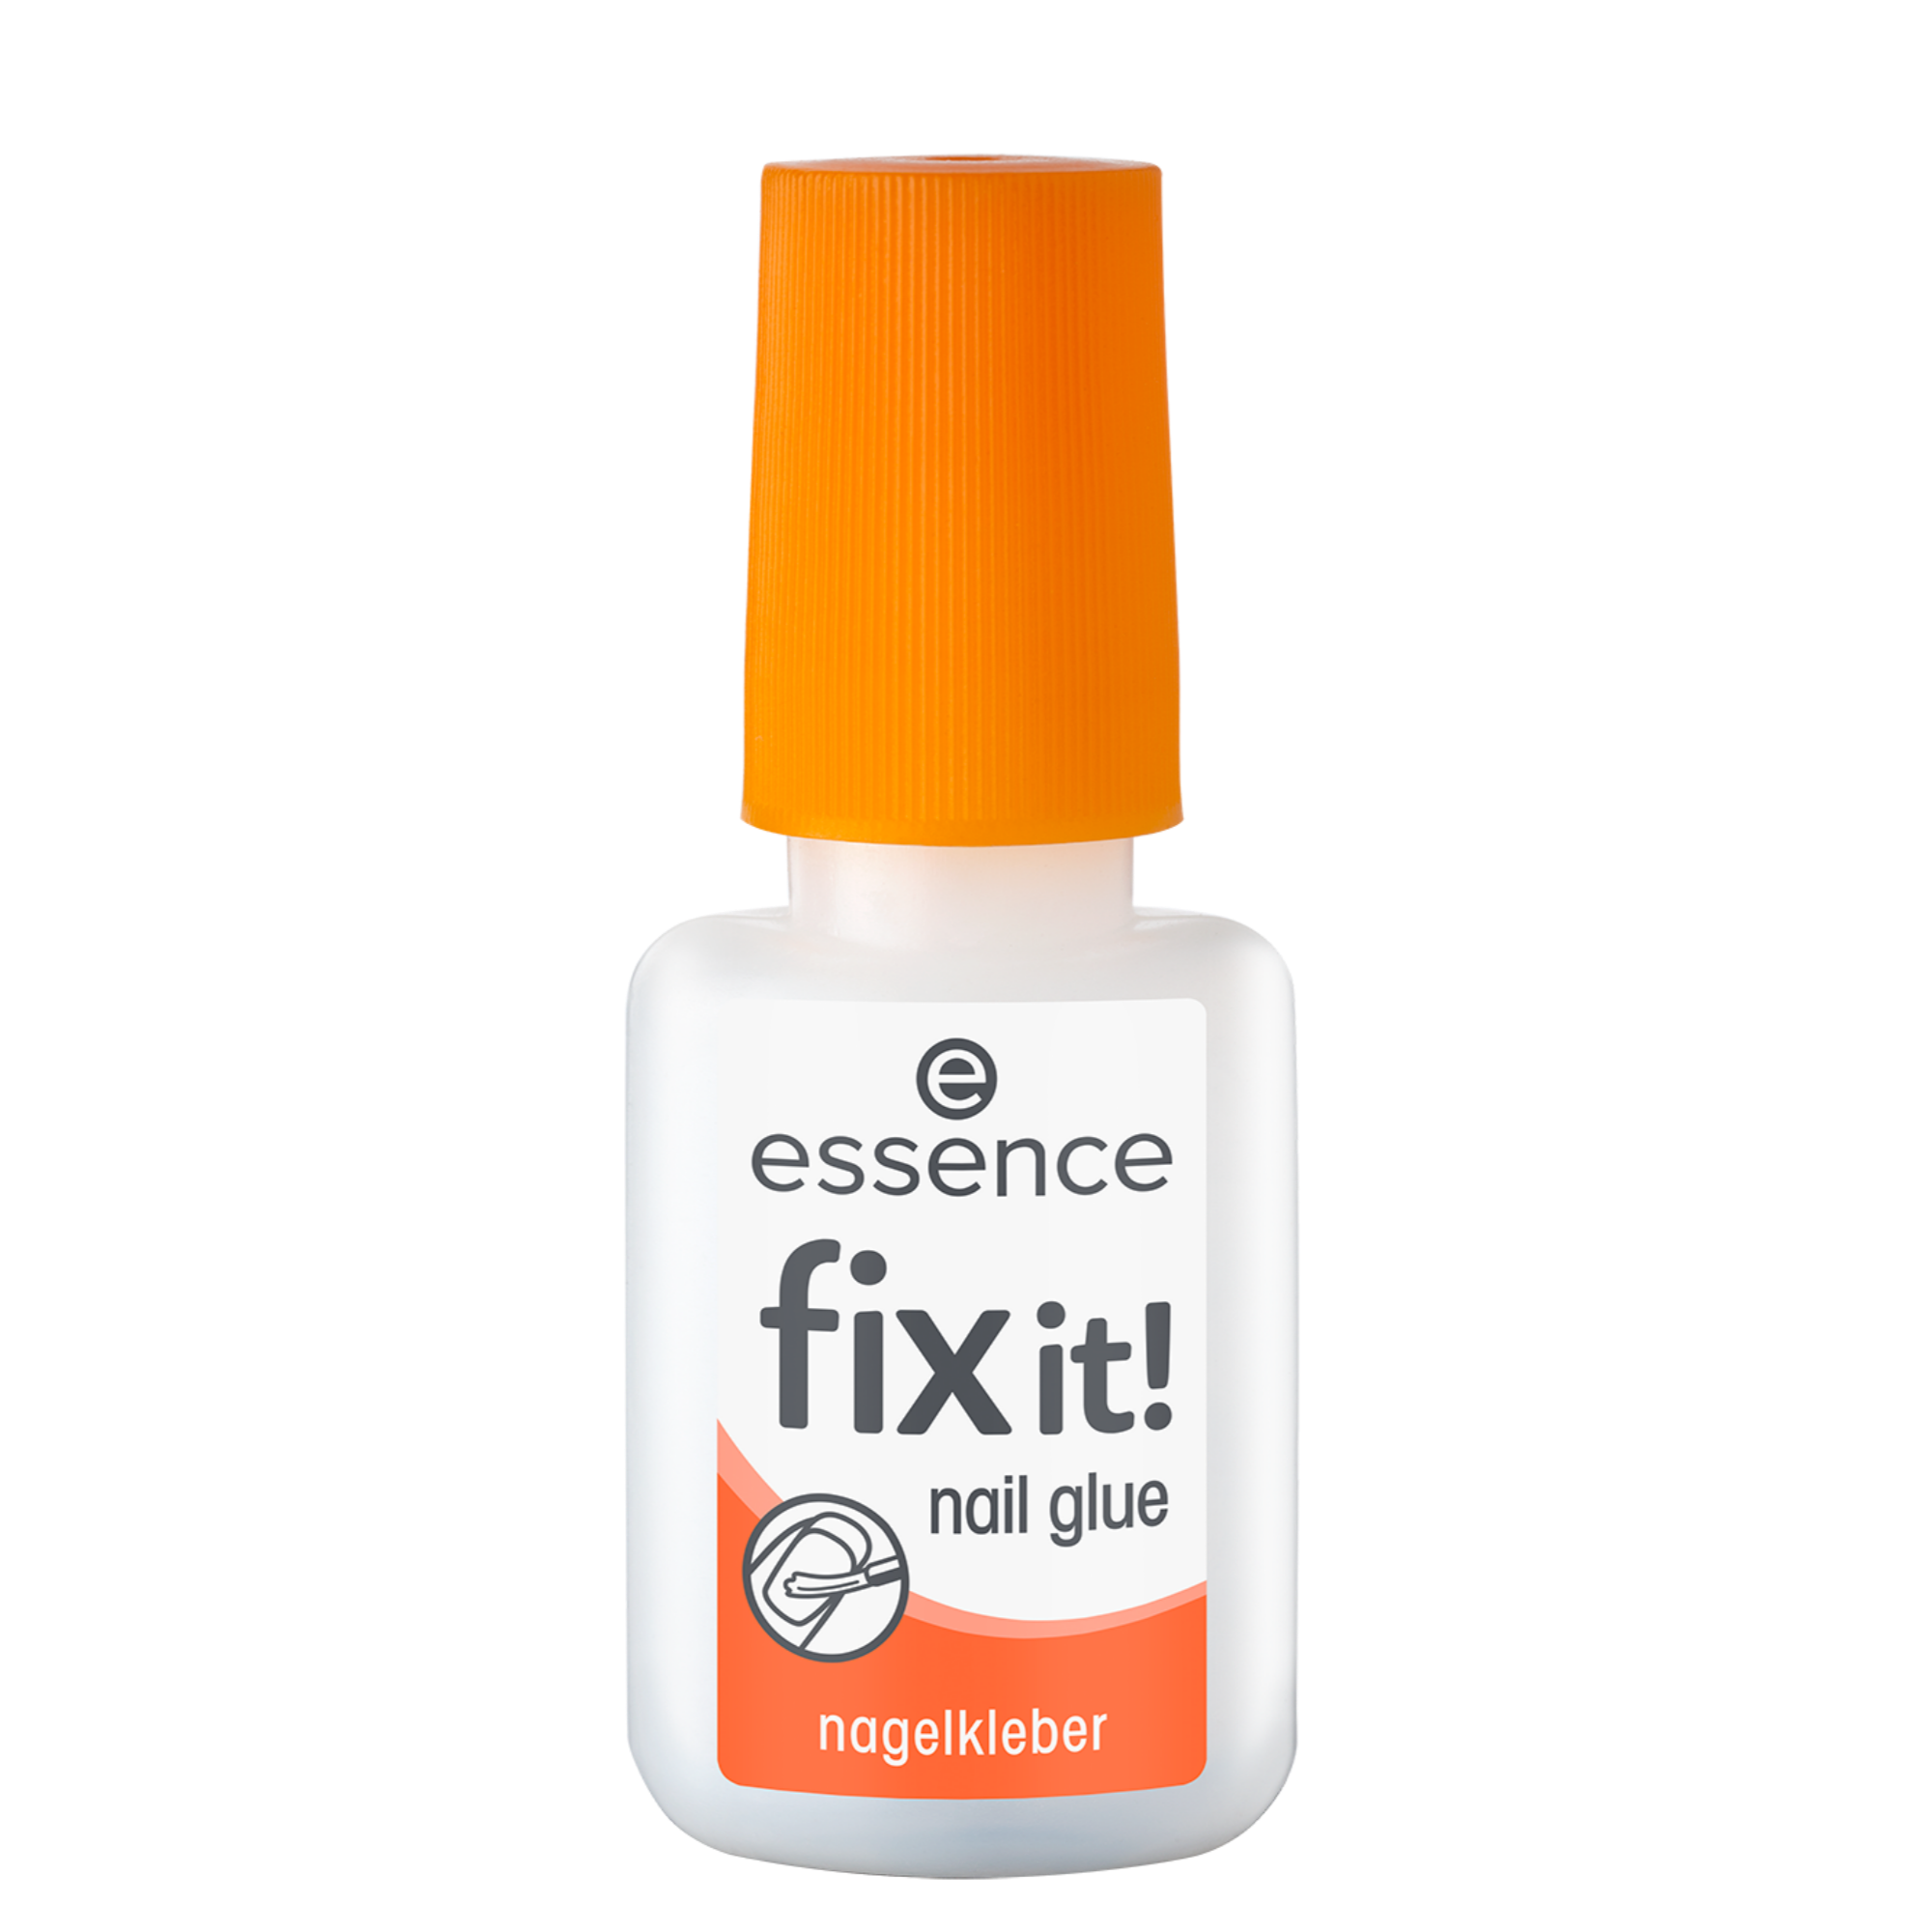 fix it! nail glue